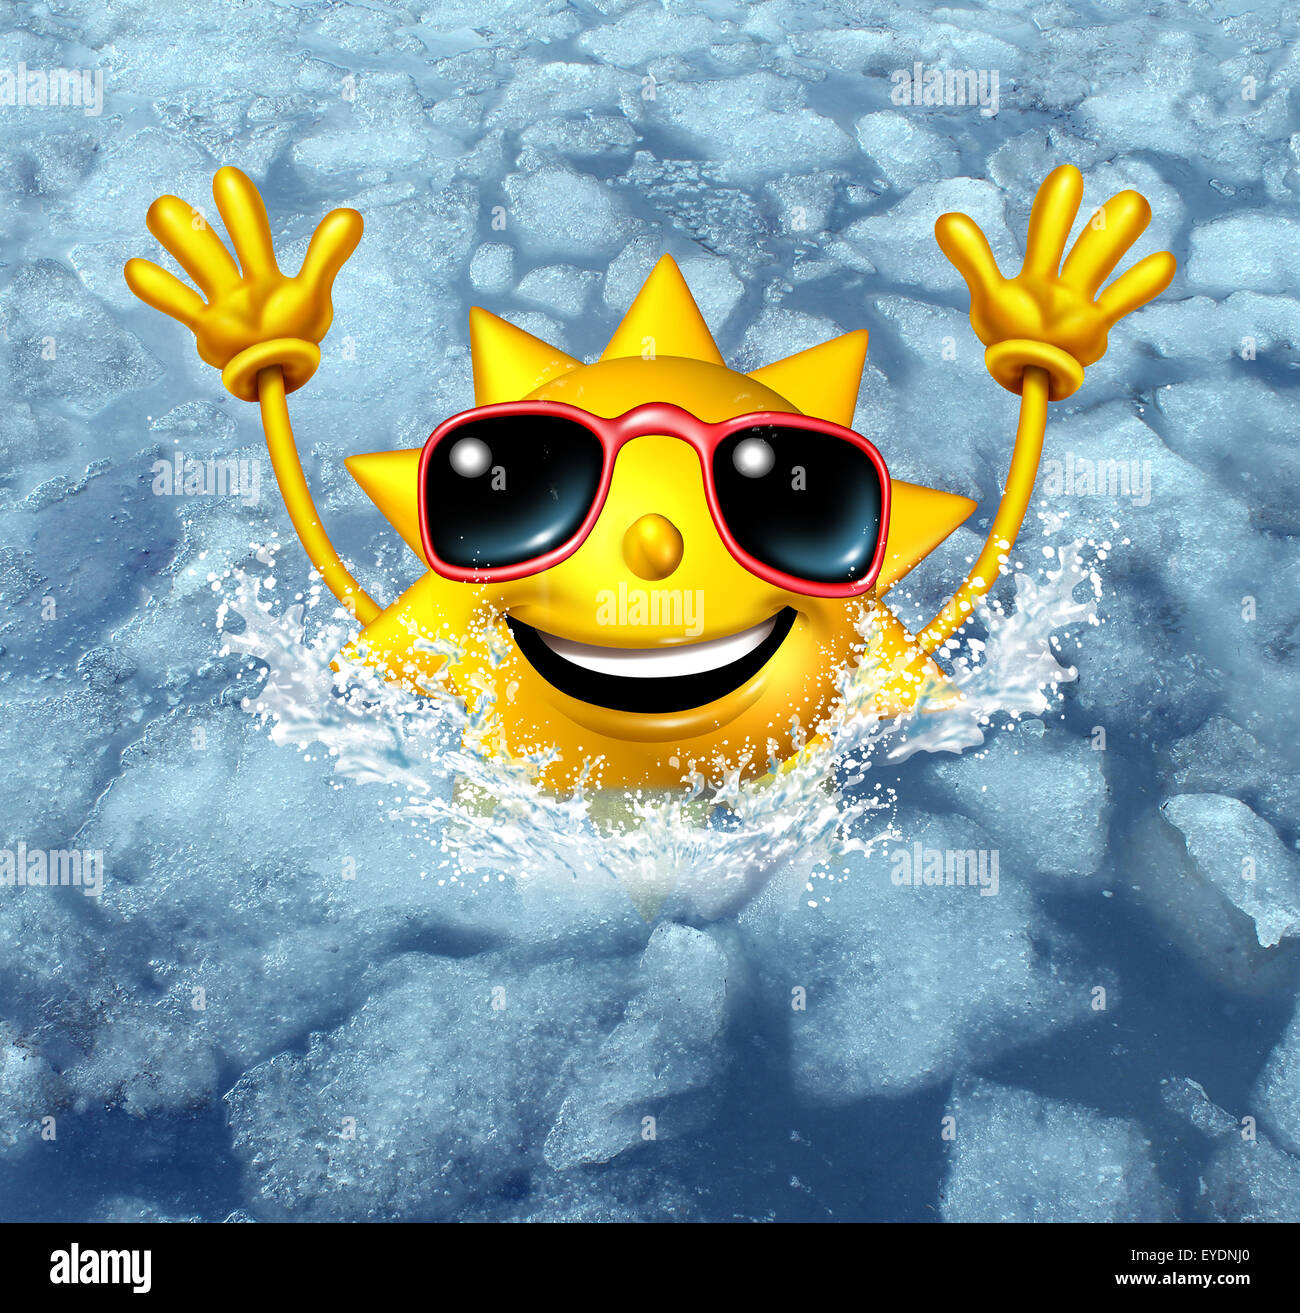 Relations sérieuses in et off Coooling refroidir concept comme un heureux caractère chaud soleil plonger dans l'eau gelée que comme un symbole pour la gestion de temps chaud, la chaleur d'été et pause rafraîchissante d'une canicule. Banque D'Images